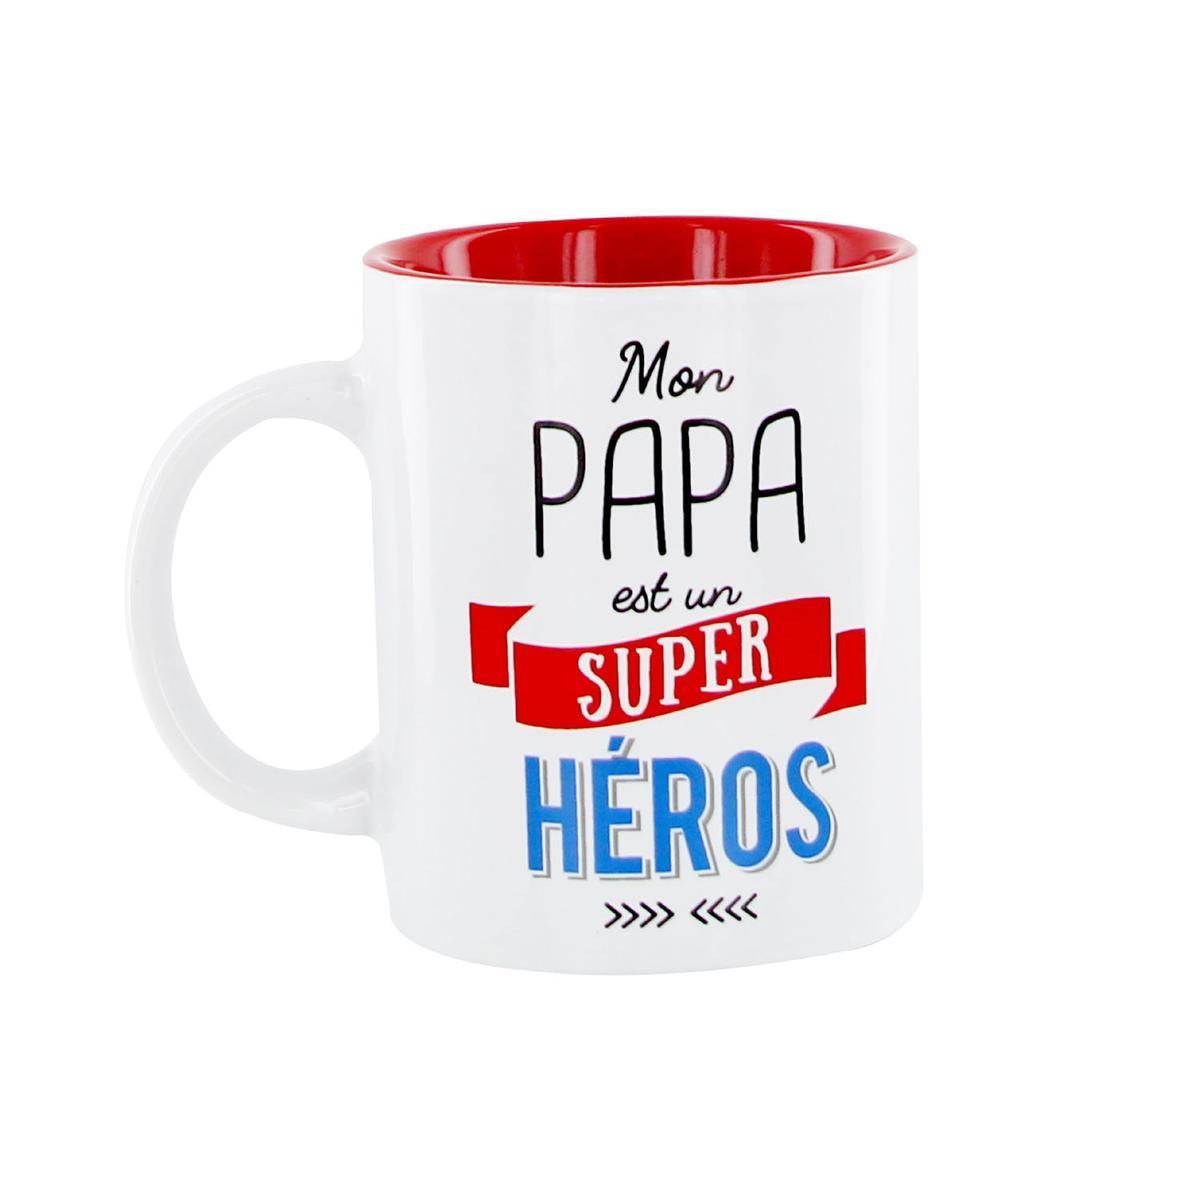 Mug 'Papa est un superhéros' - L 12 x H 9.7 x l 8.2 cm - Rouge - THE CONCEPT FACTORY